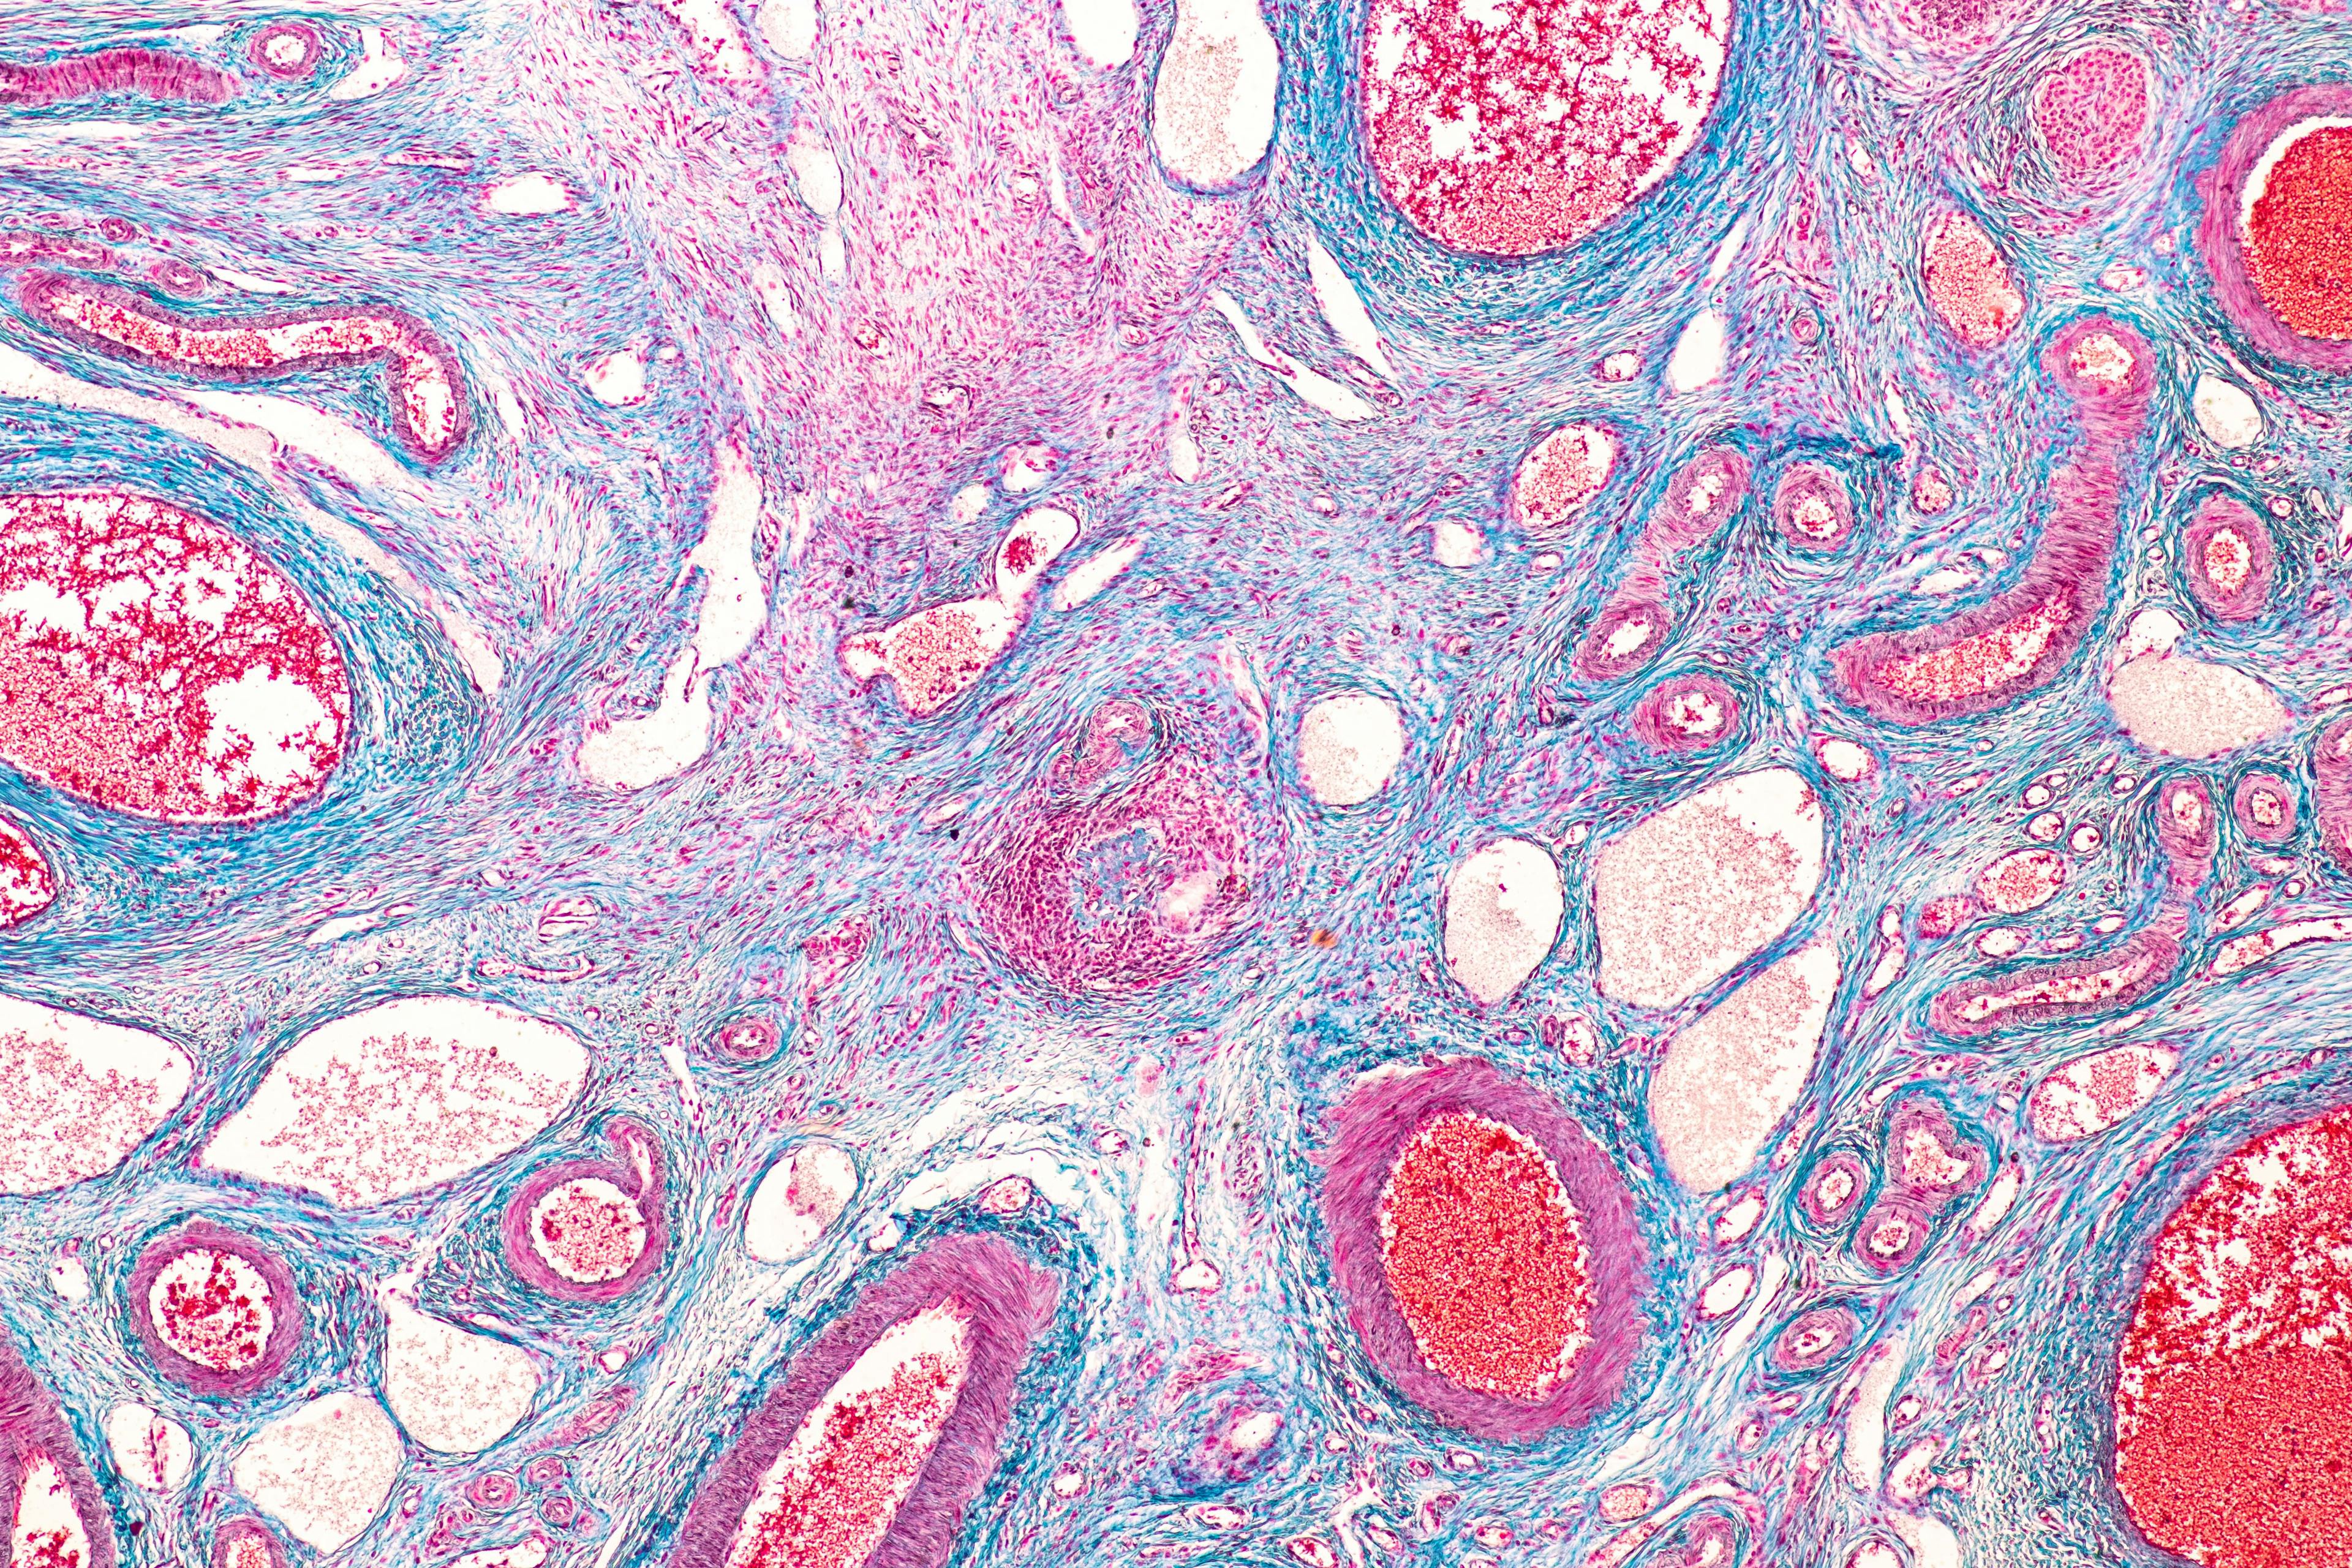 Ovary under the microscopic: © sinhyu - stock.adobe.com